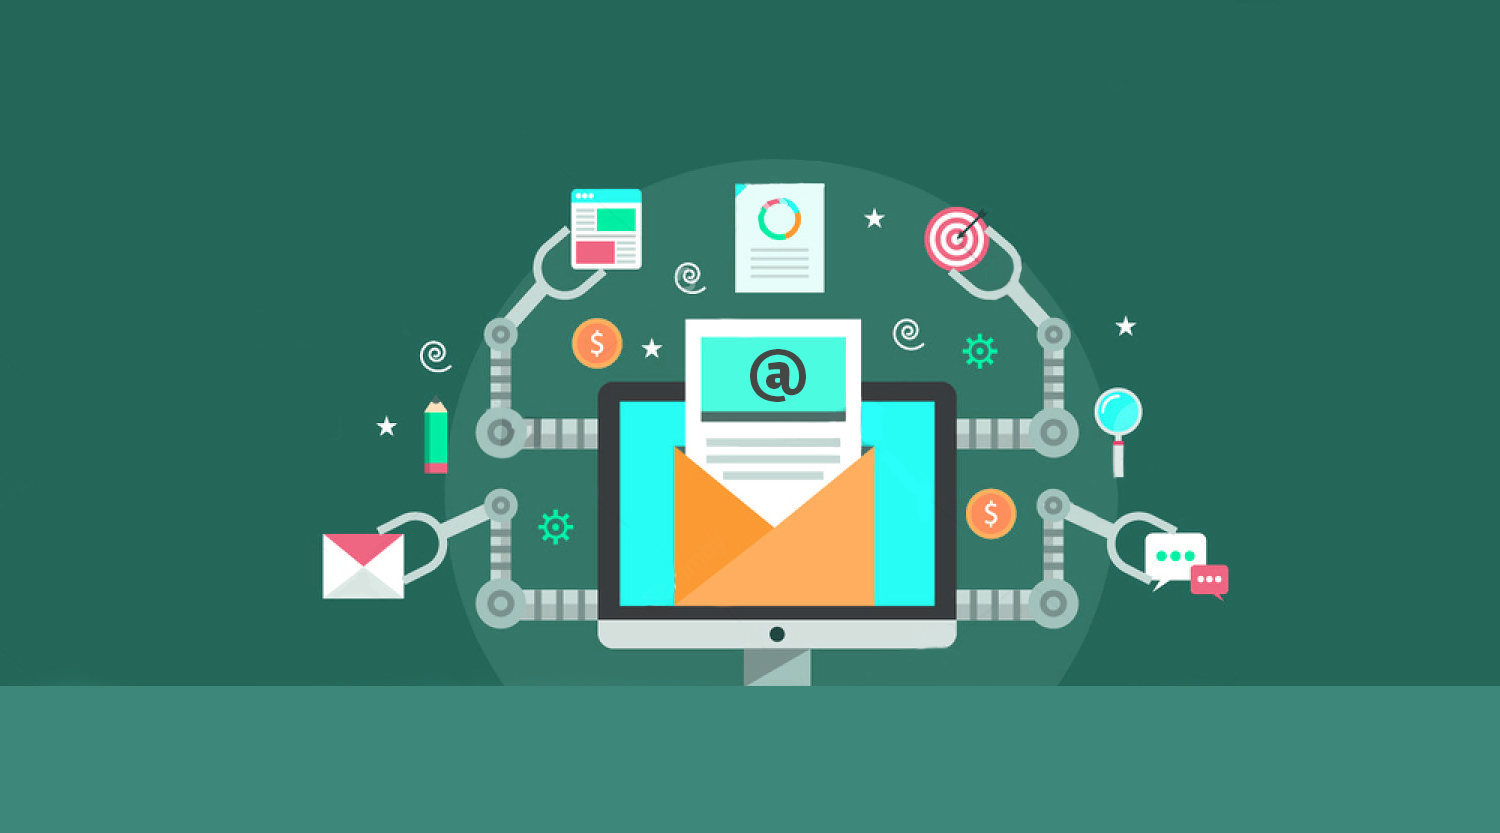 ایمیل مارکتینگ (Email Marketing) چیست؟